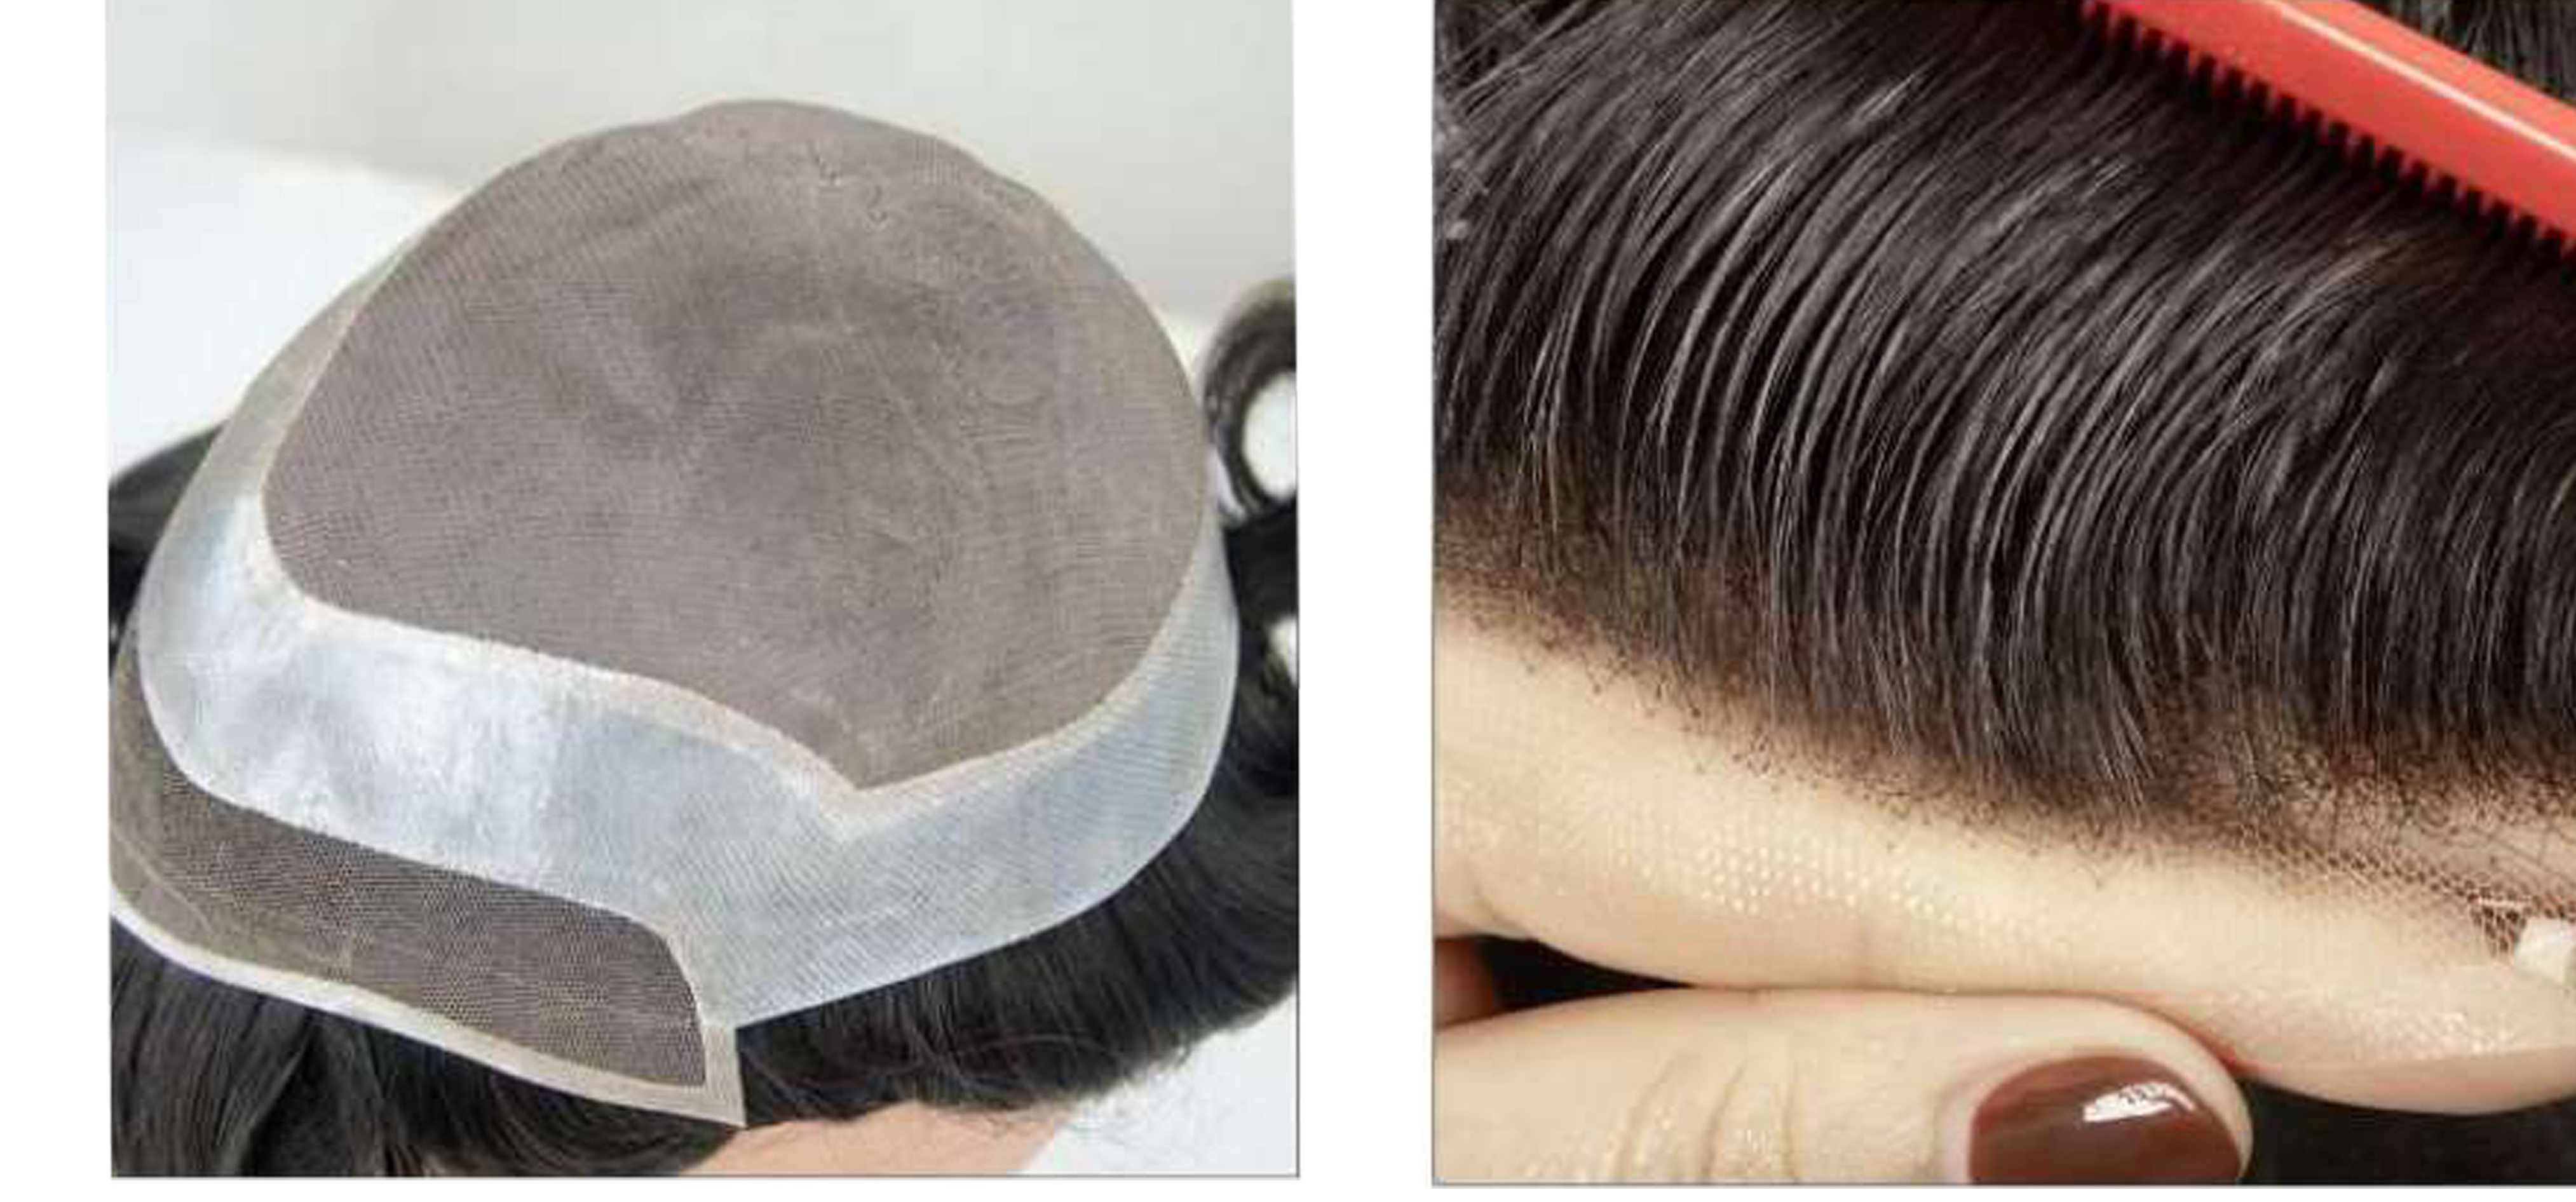 کلاه گیس مردانه طبیعی پروتز مو کف سر مردانه آنکارایی (کد:8057)